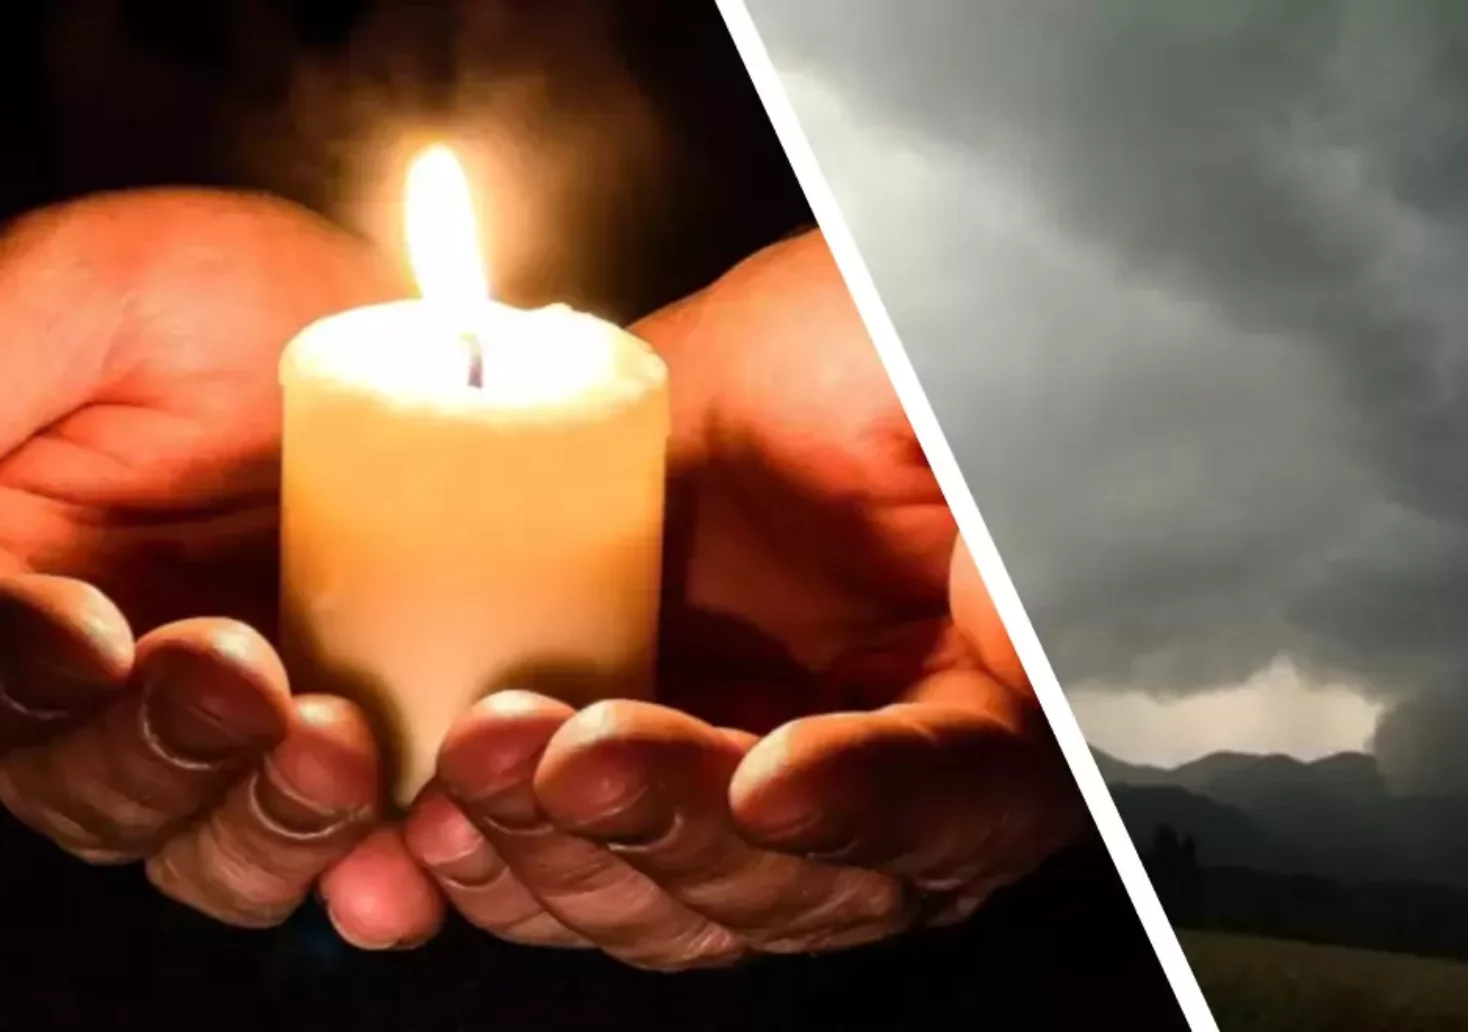 Bild auf 5min.at zeigt eine Kerze, die von Händen gehalten wird und ein Unwetter.